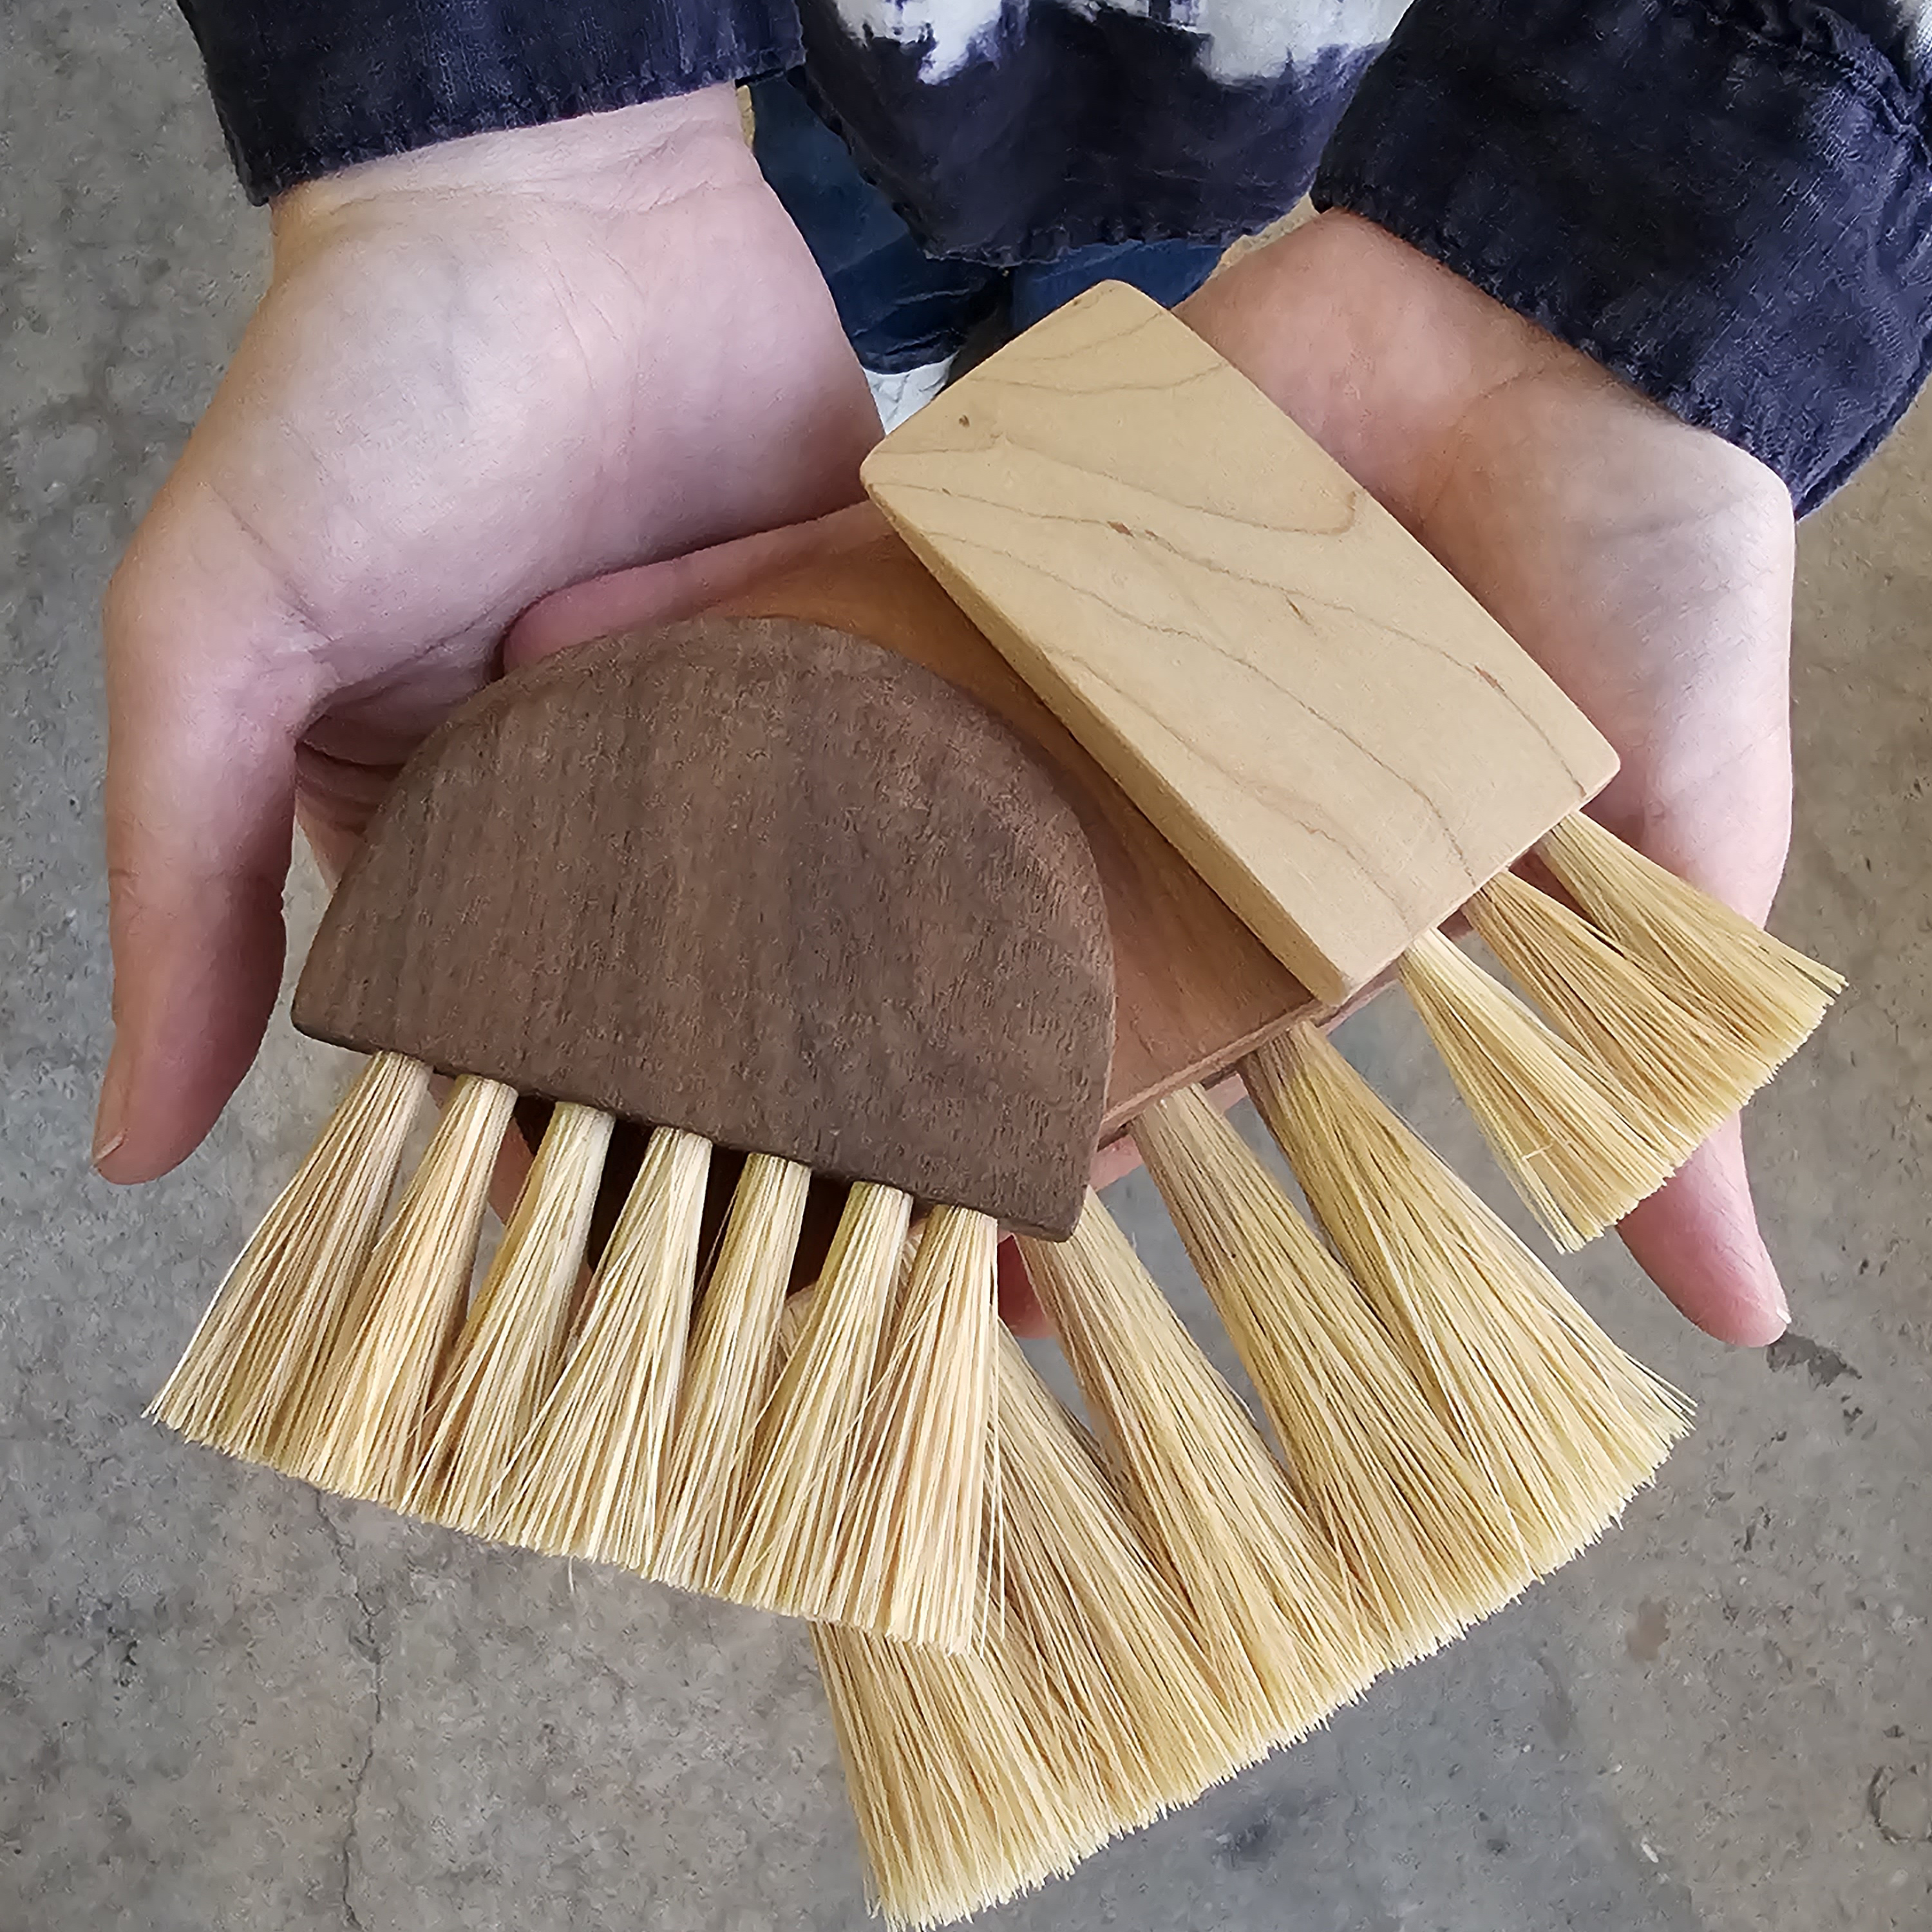 hands holding 3 handmade wooden handled artisan brushes